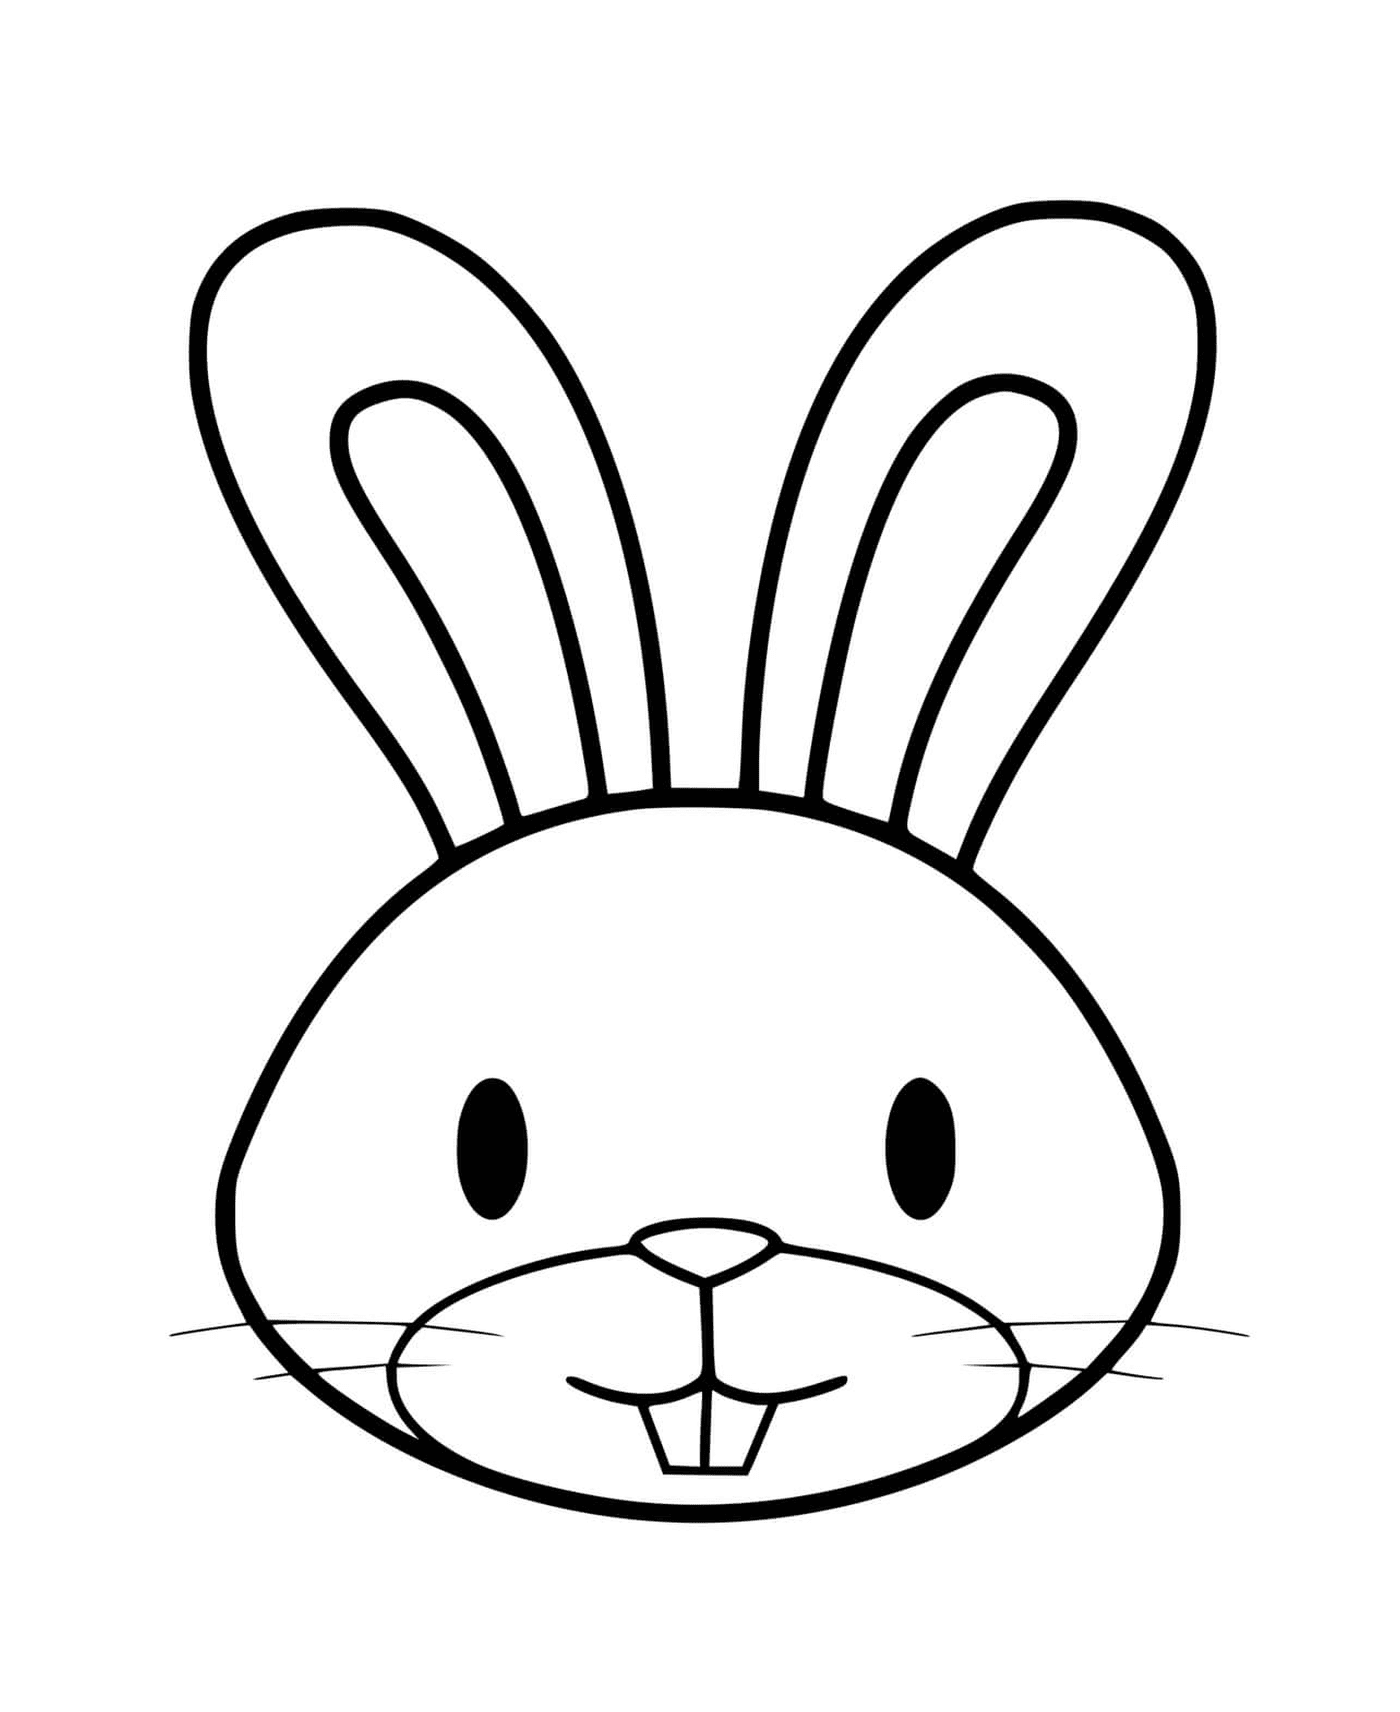  复活节,兔子头,兔子头,兔子头,兔子头,兔子头,兔子头,兔子头,兔子头,兔子头,兔子头,兔子头,兔子头,兔子头,兔子复活节 